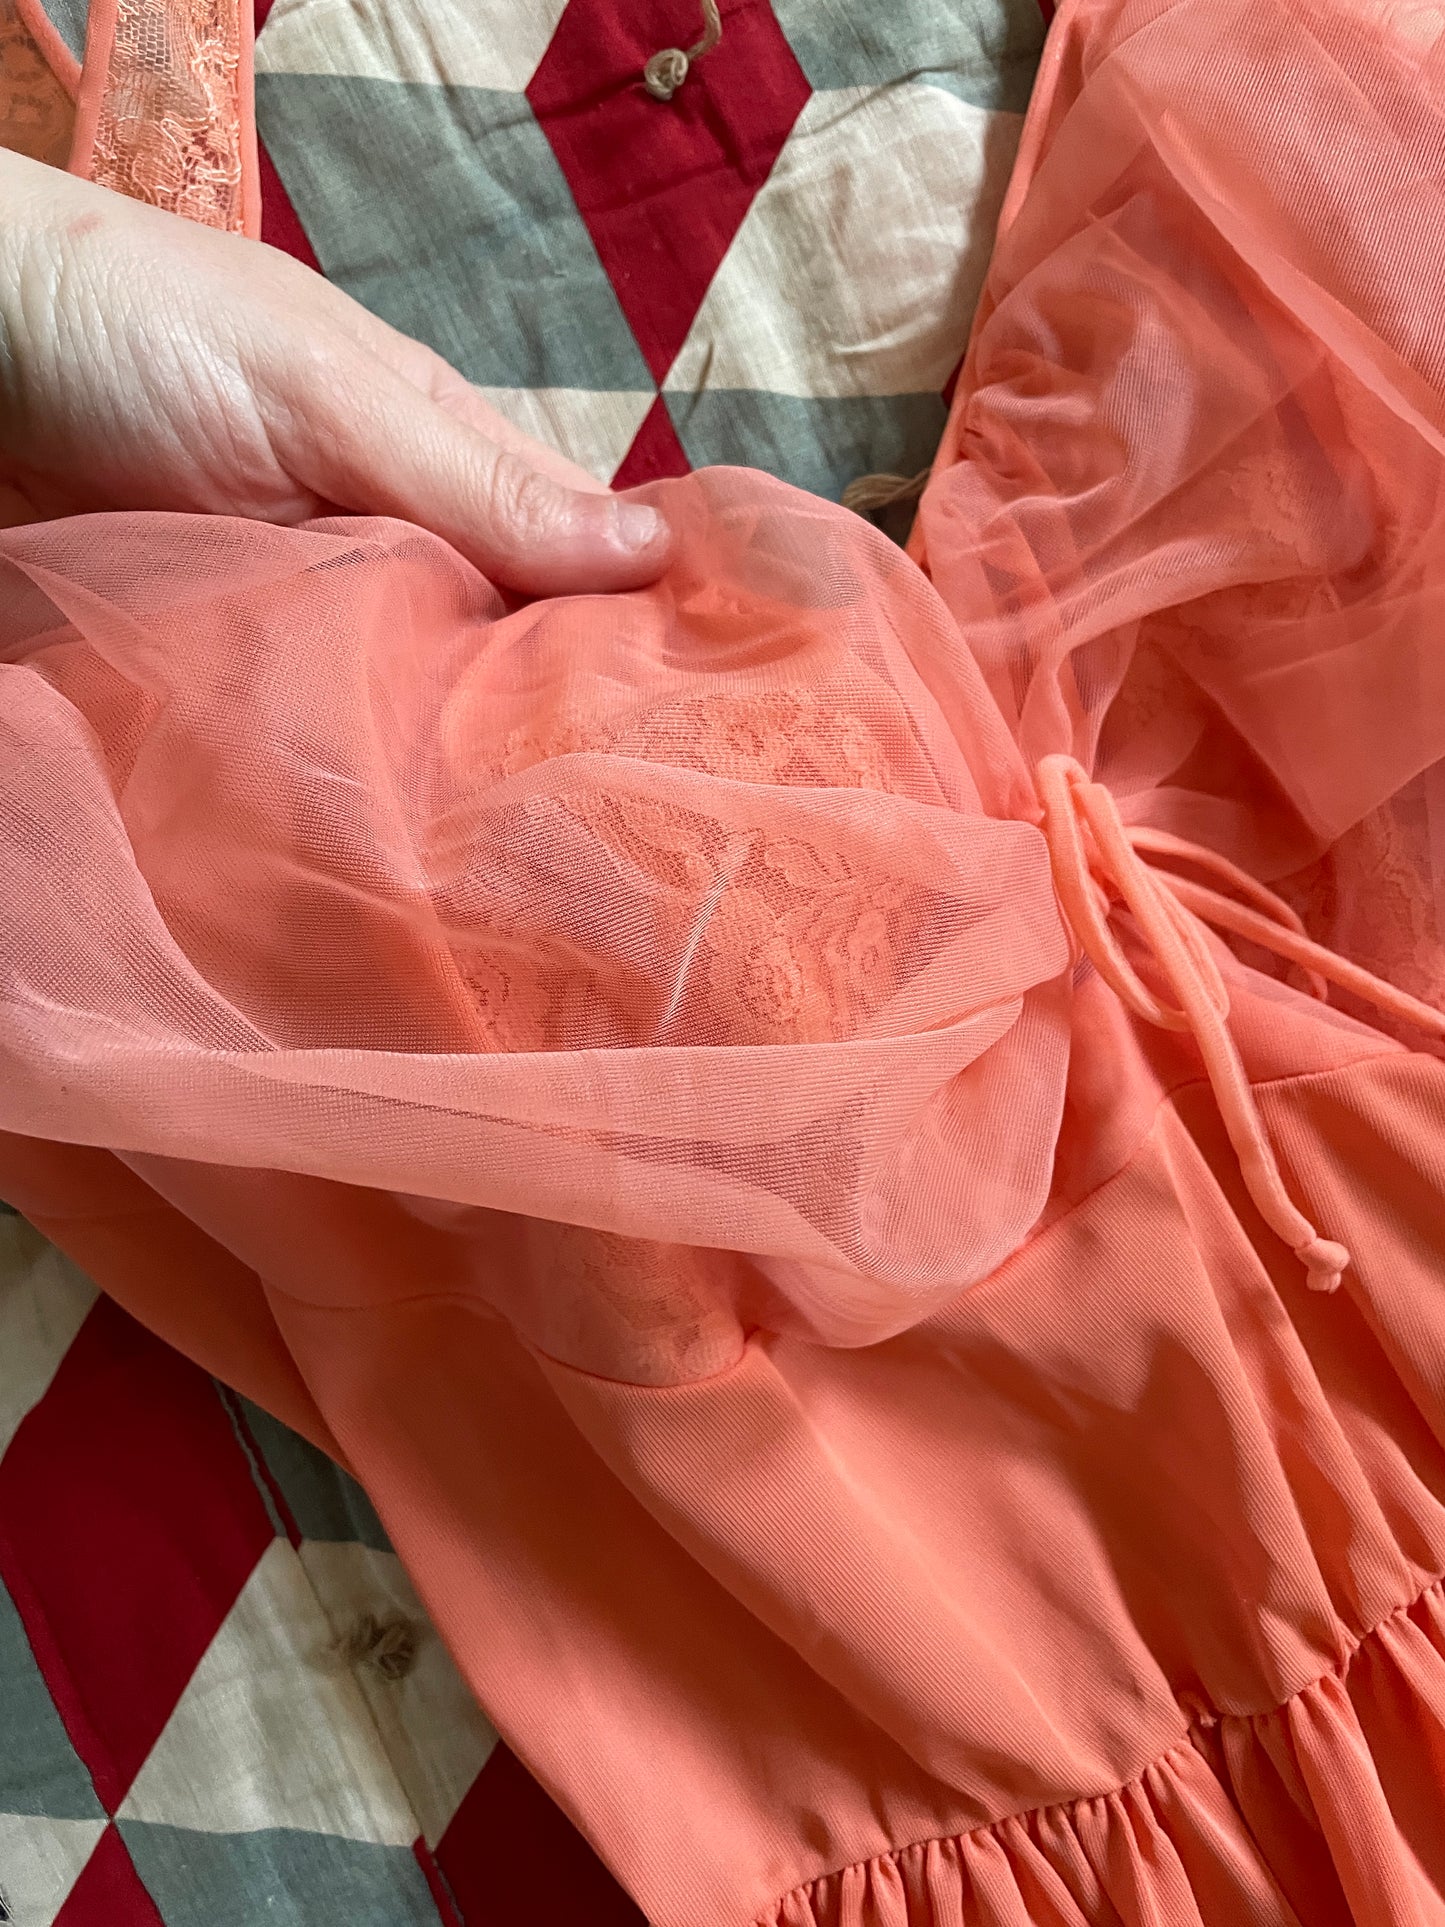 1960s Salmon Pink Nylon Lingerie Slip Dress - Size Medium